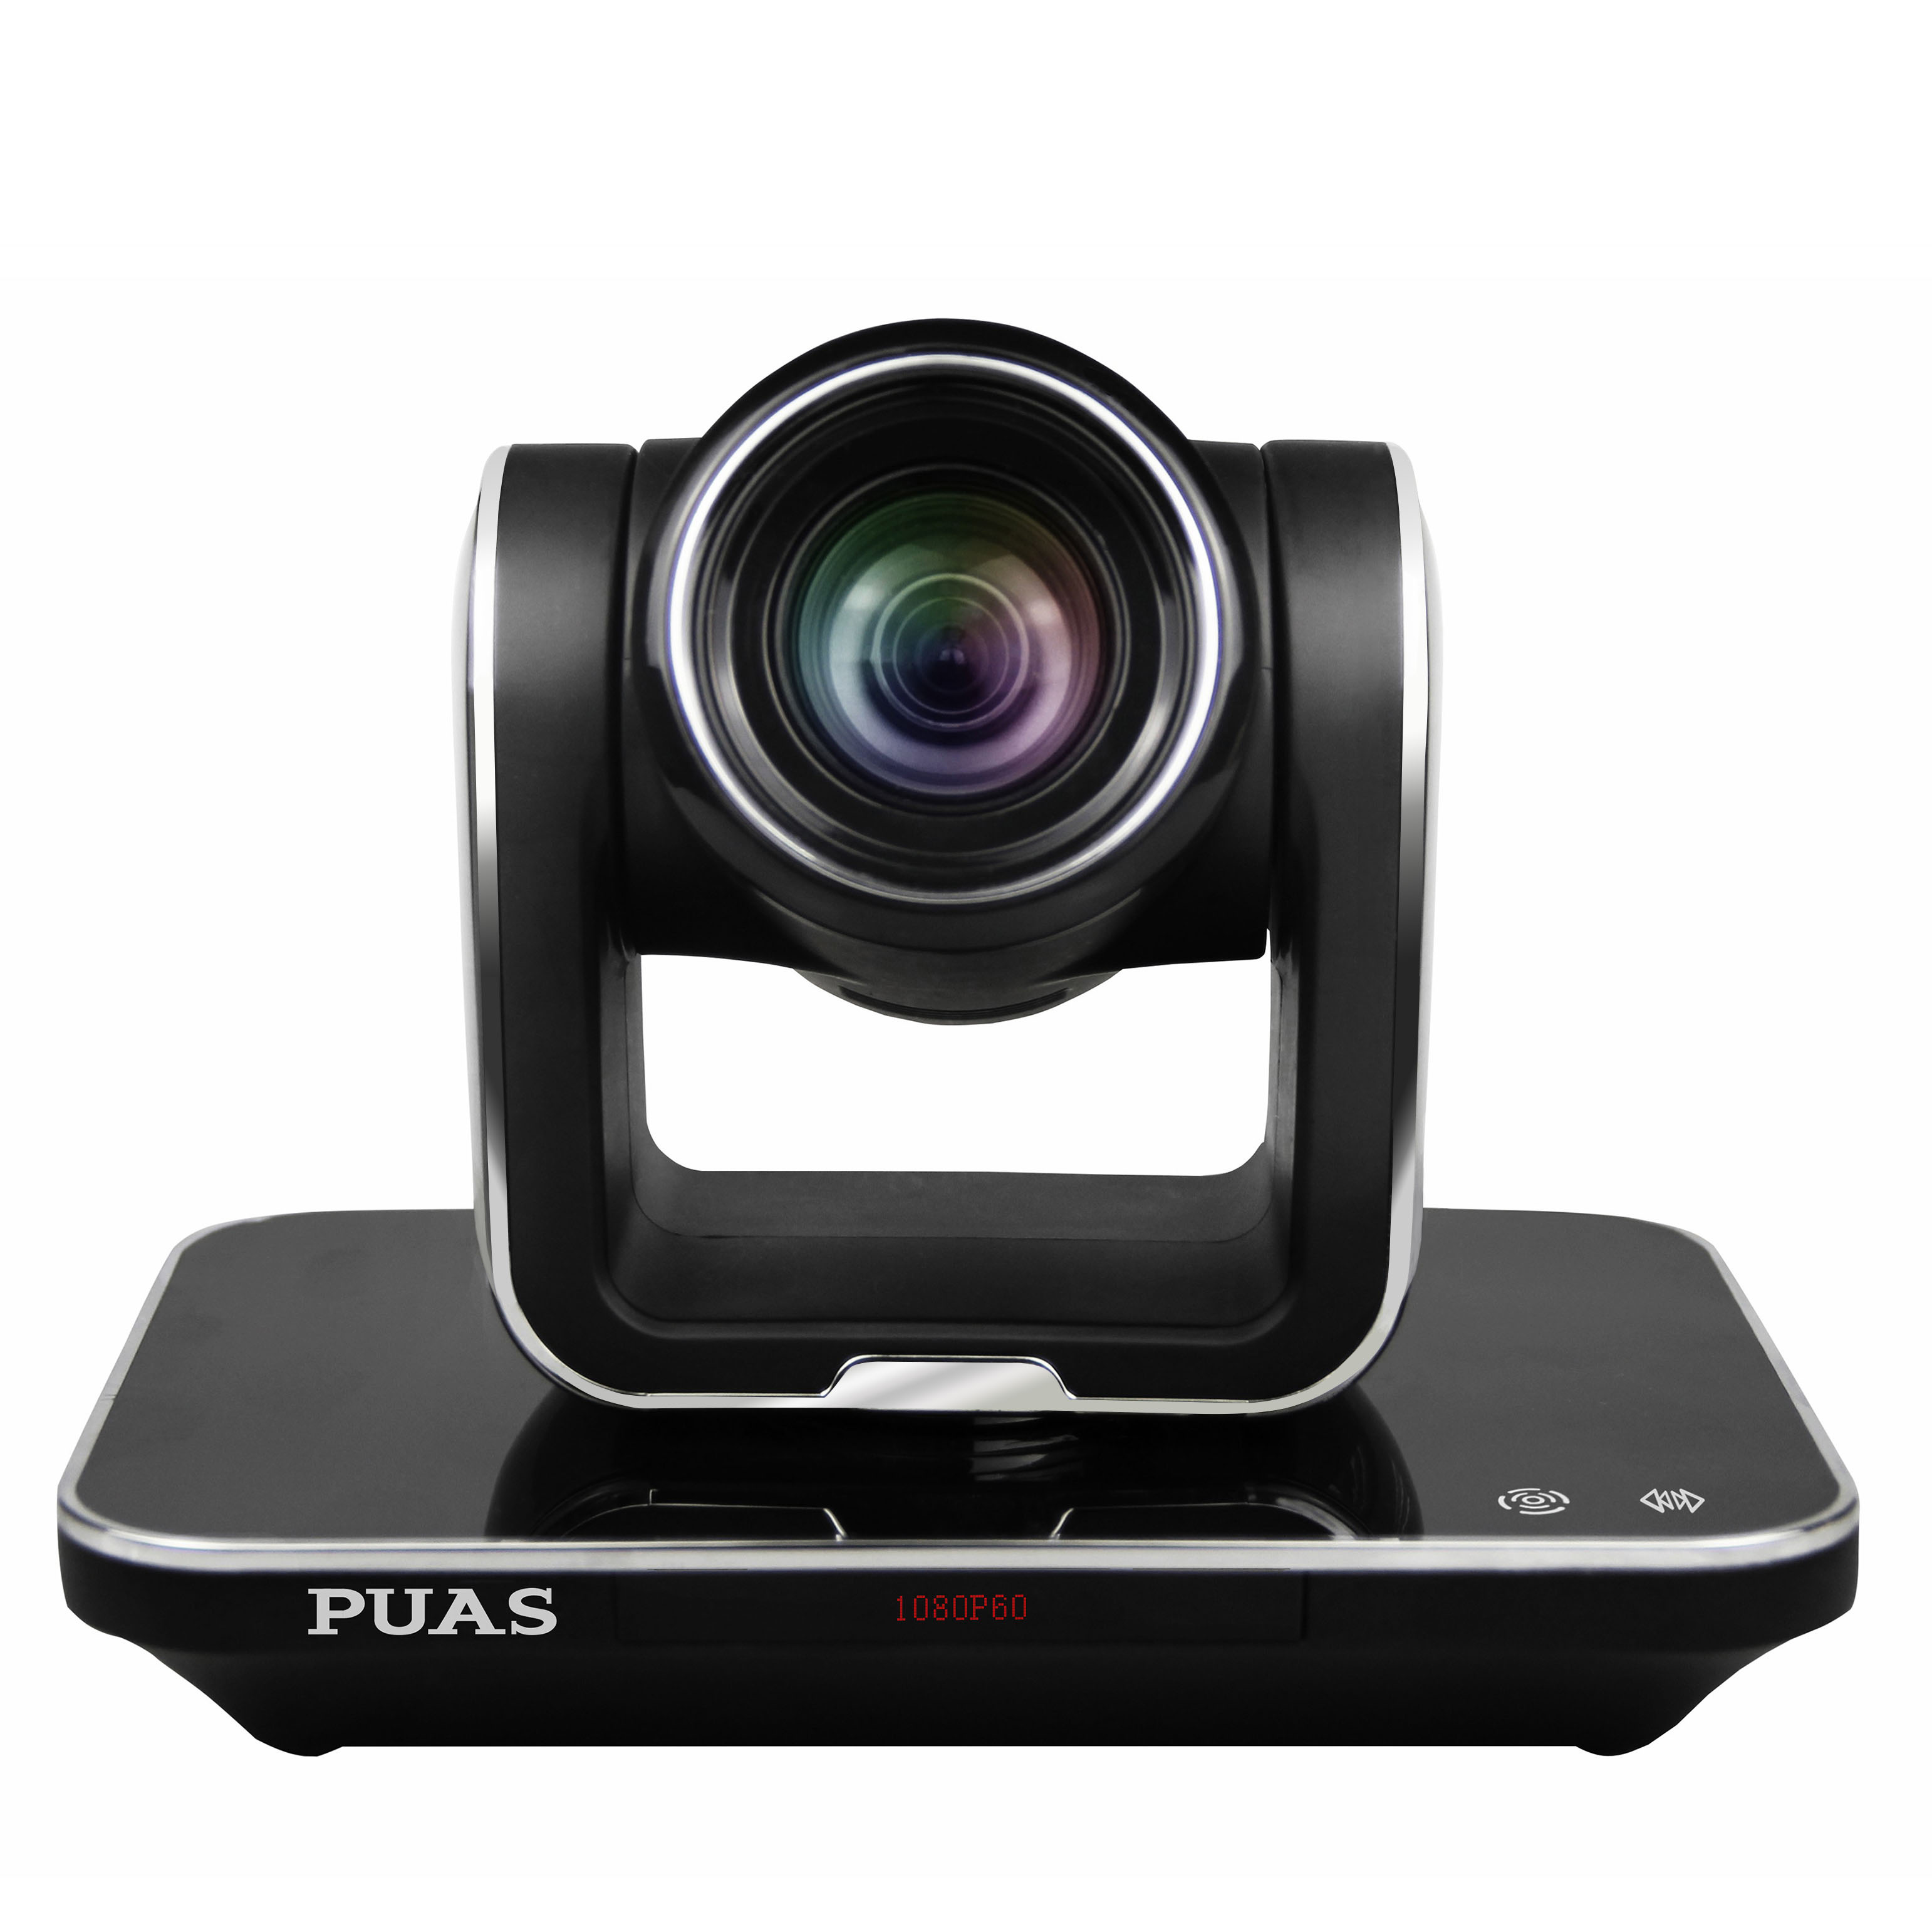 富士能HA13x4.5B高清广角镜头+松下AJ-D908MC摄像机 - 影像器材 - Chiphell - 分享与交流用户体验